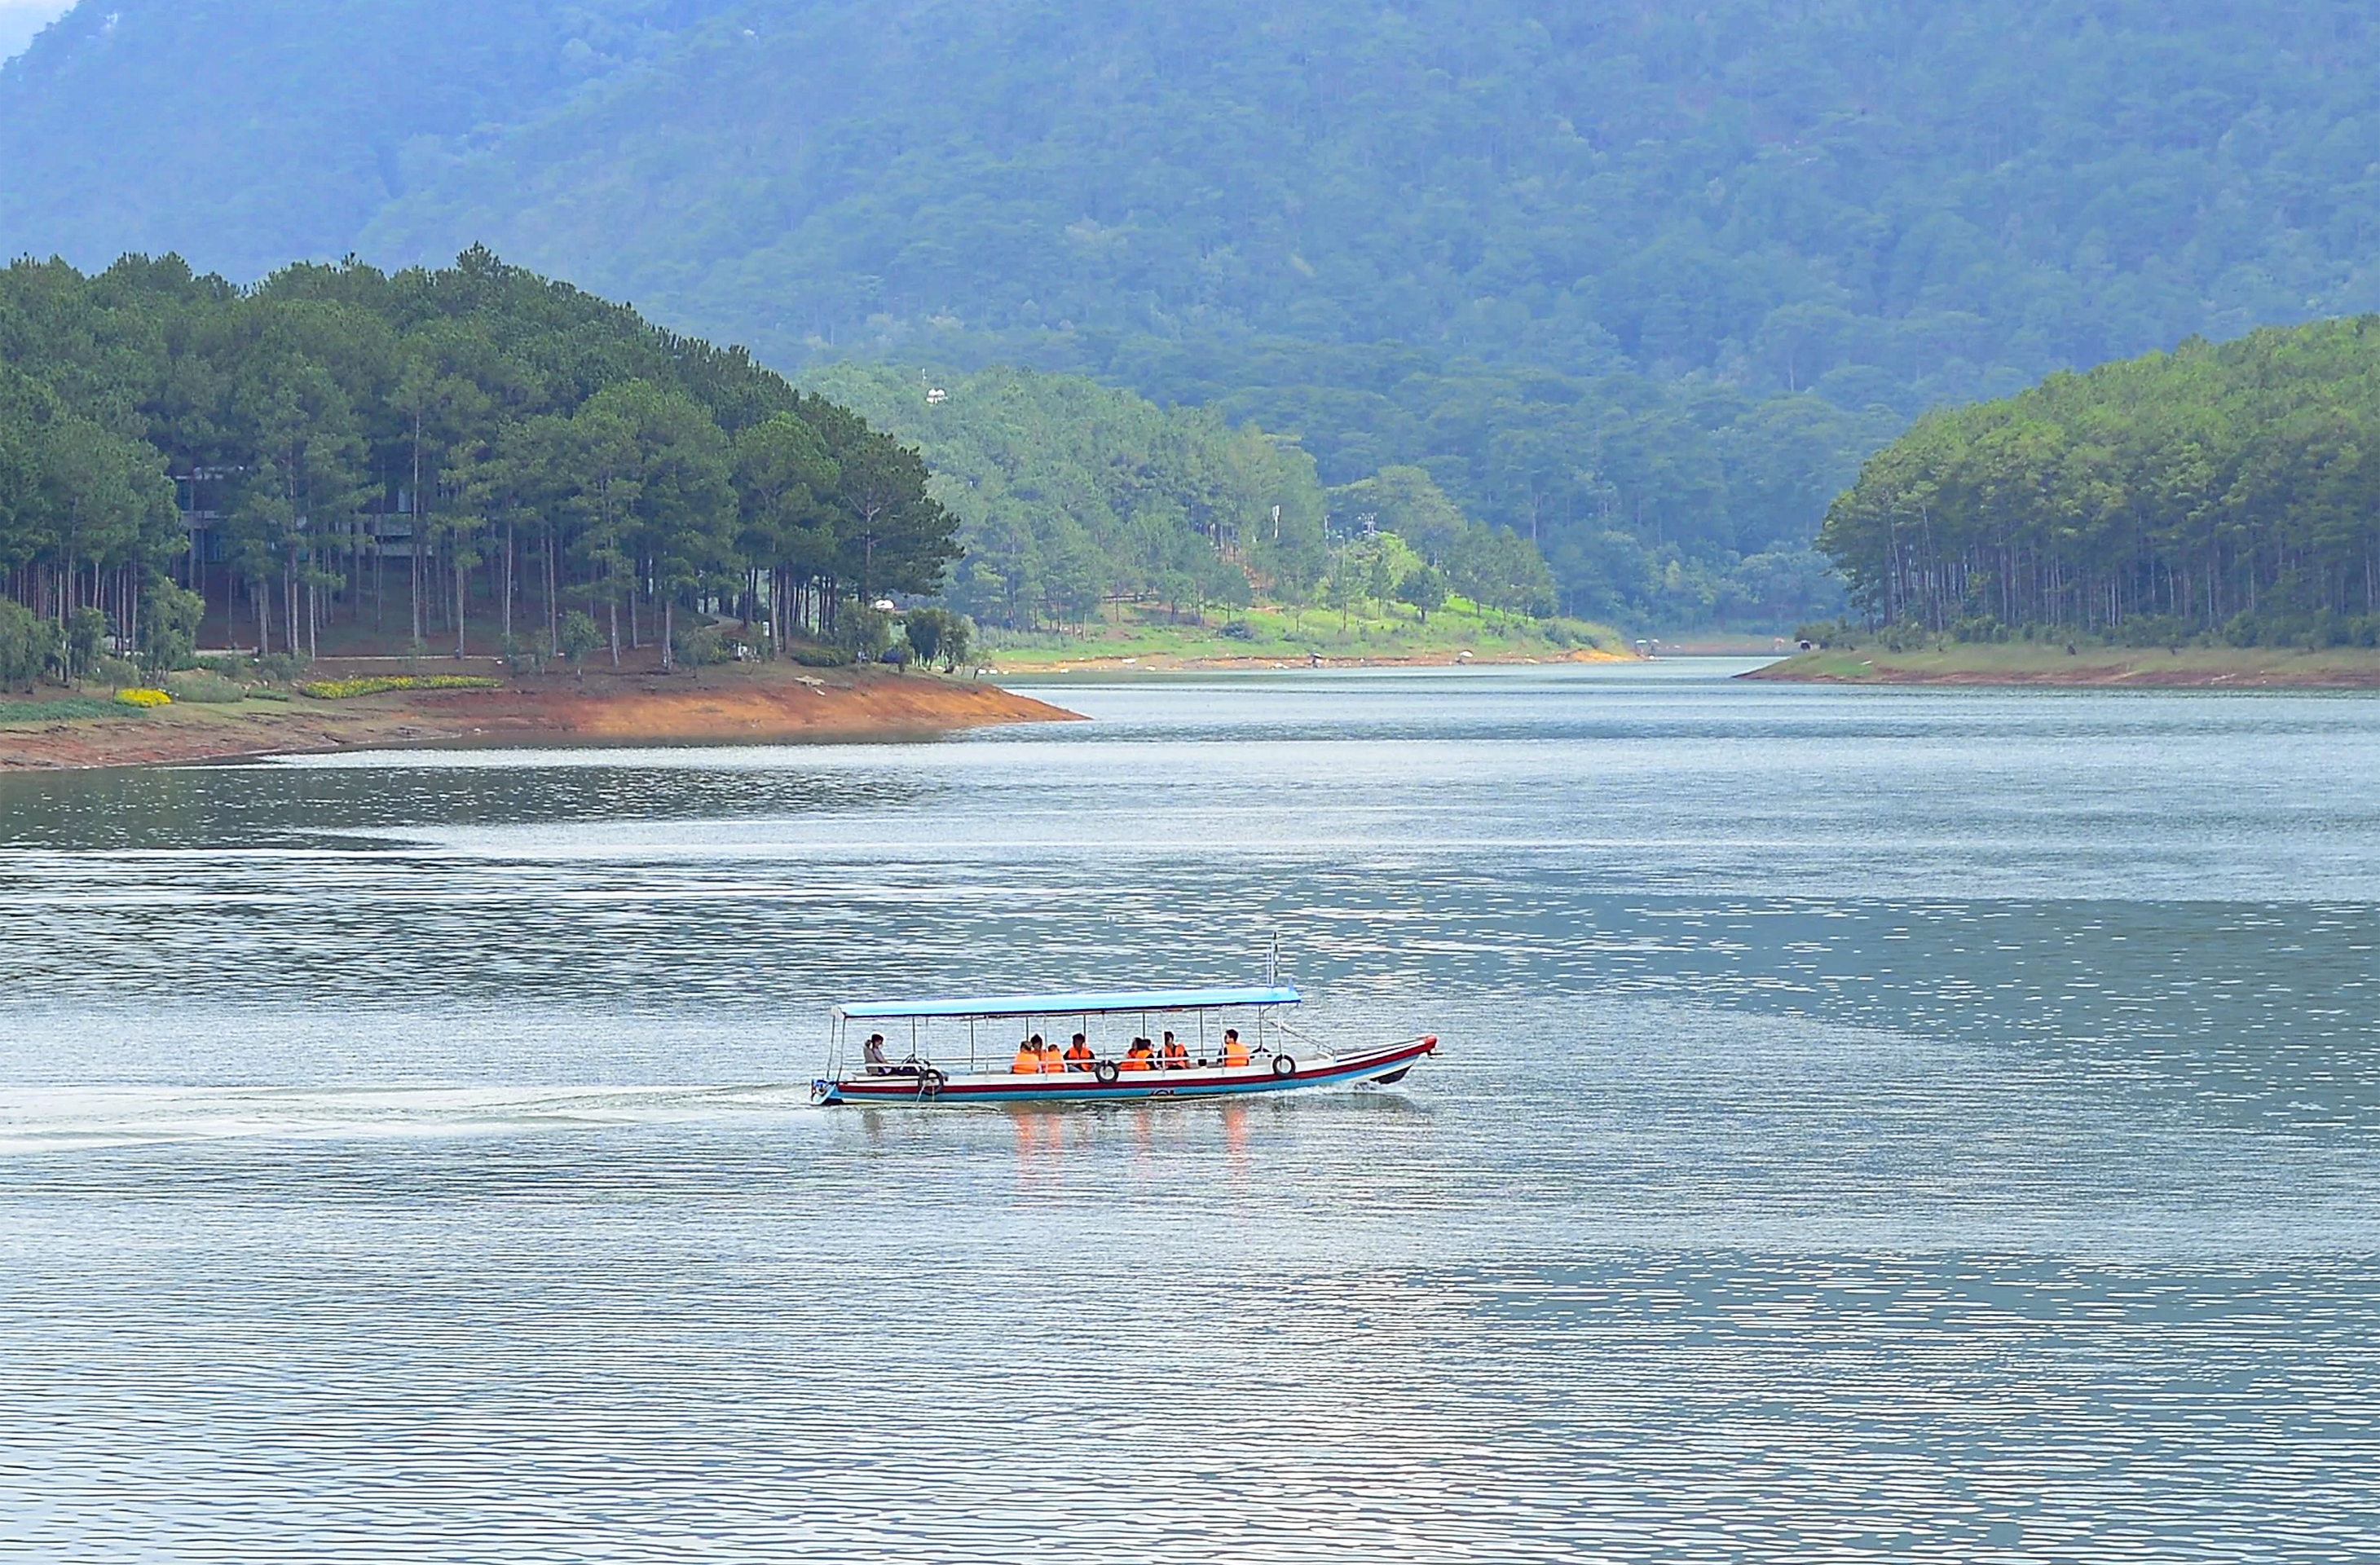 Dân sinh - Bất chấp chỉ đạo của UBND tỉnh Lâm Đồng, du thuyền vẫn hoạt động trên hồ Tuyền Lâm (Hình 7).